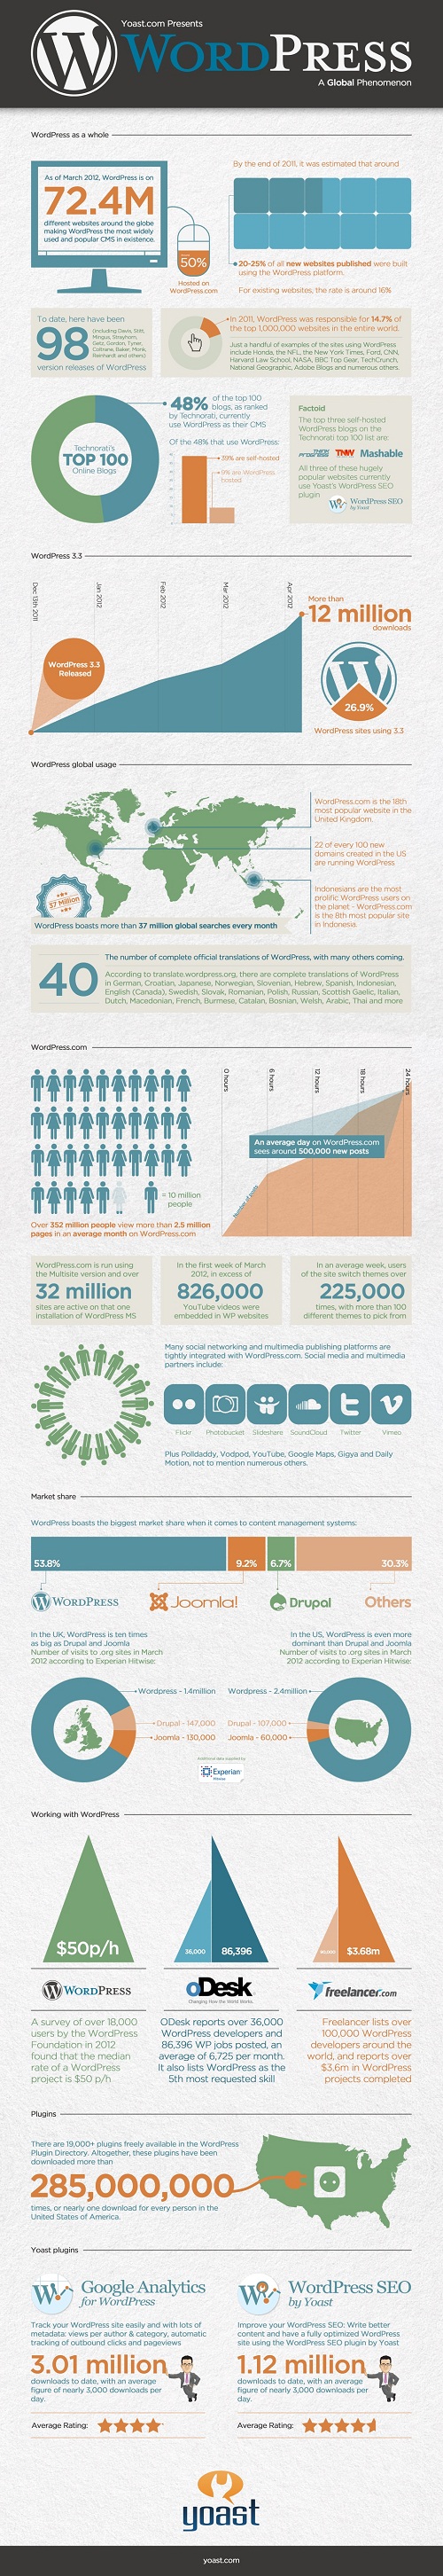 WordPress Phenomenon In Numbers Infographic